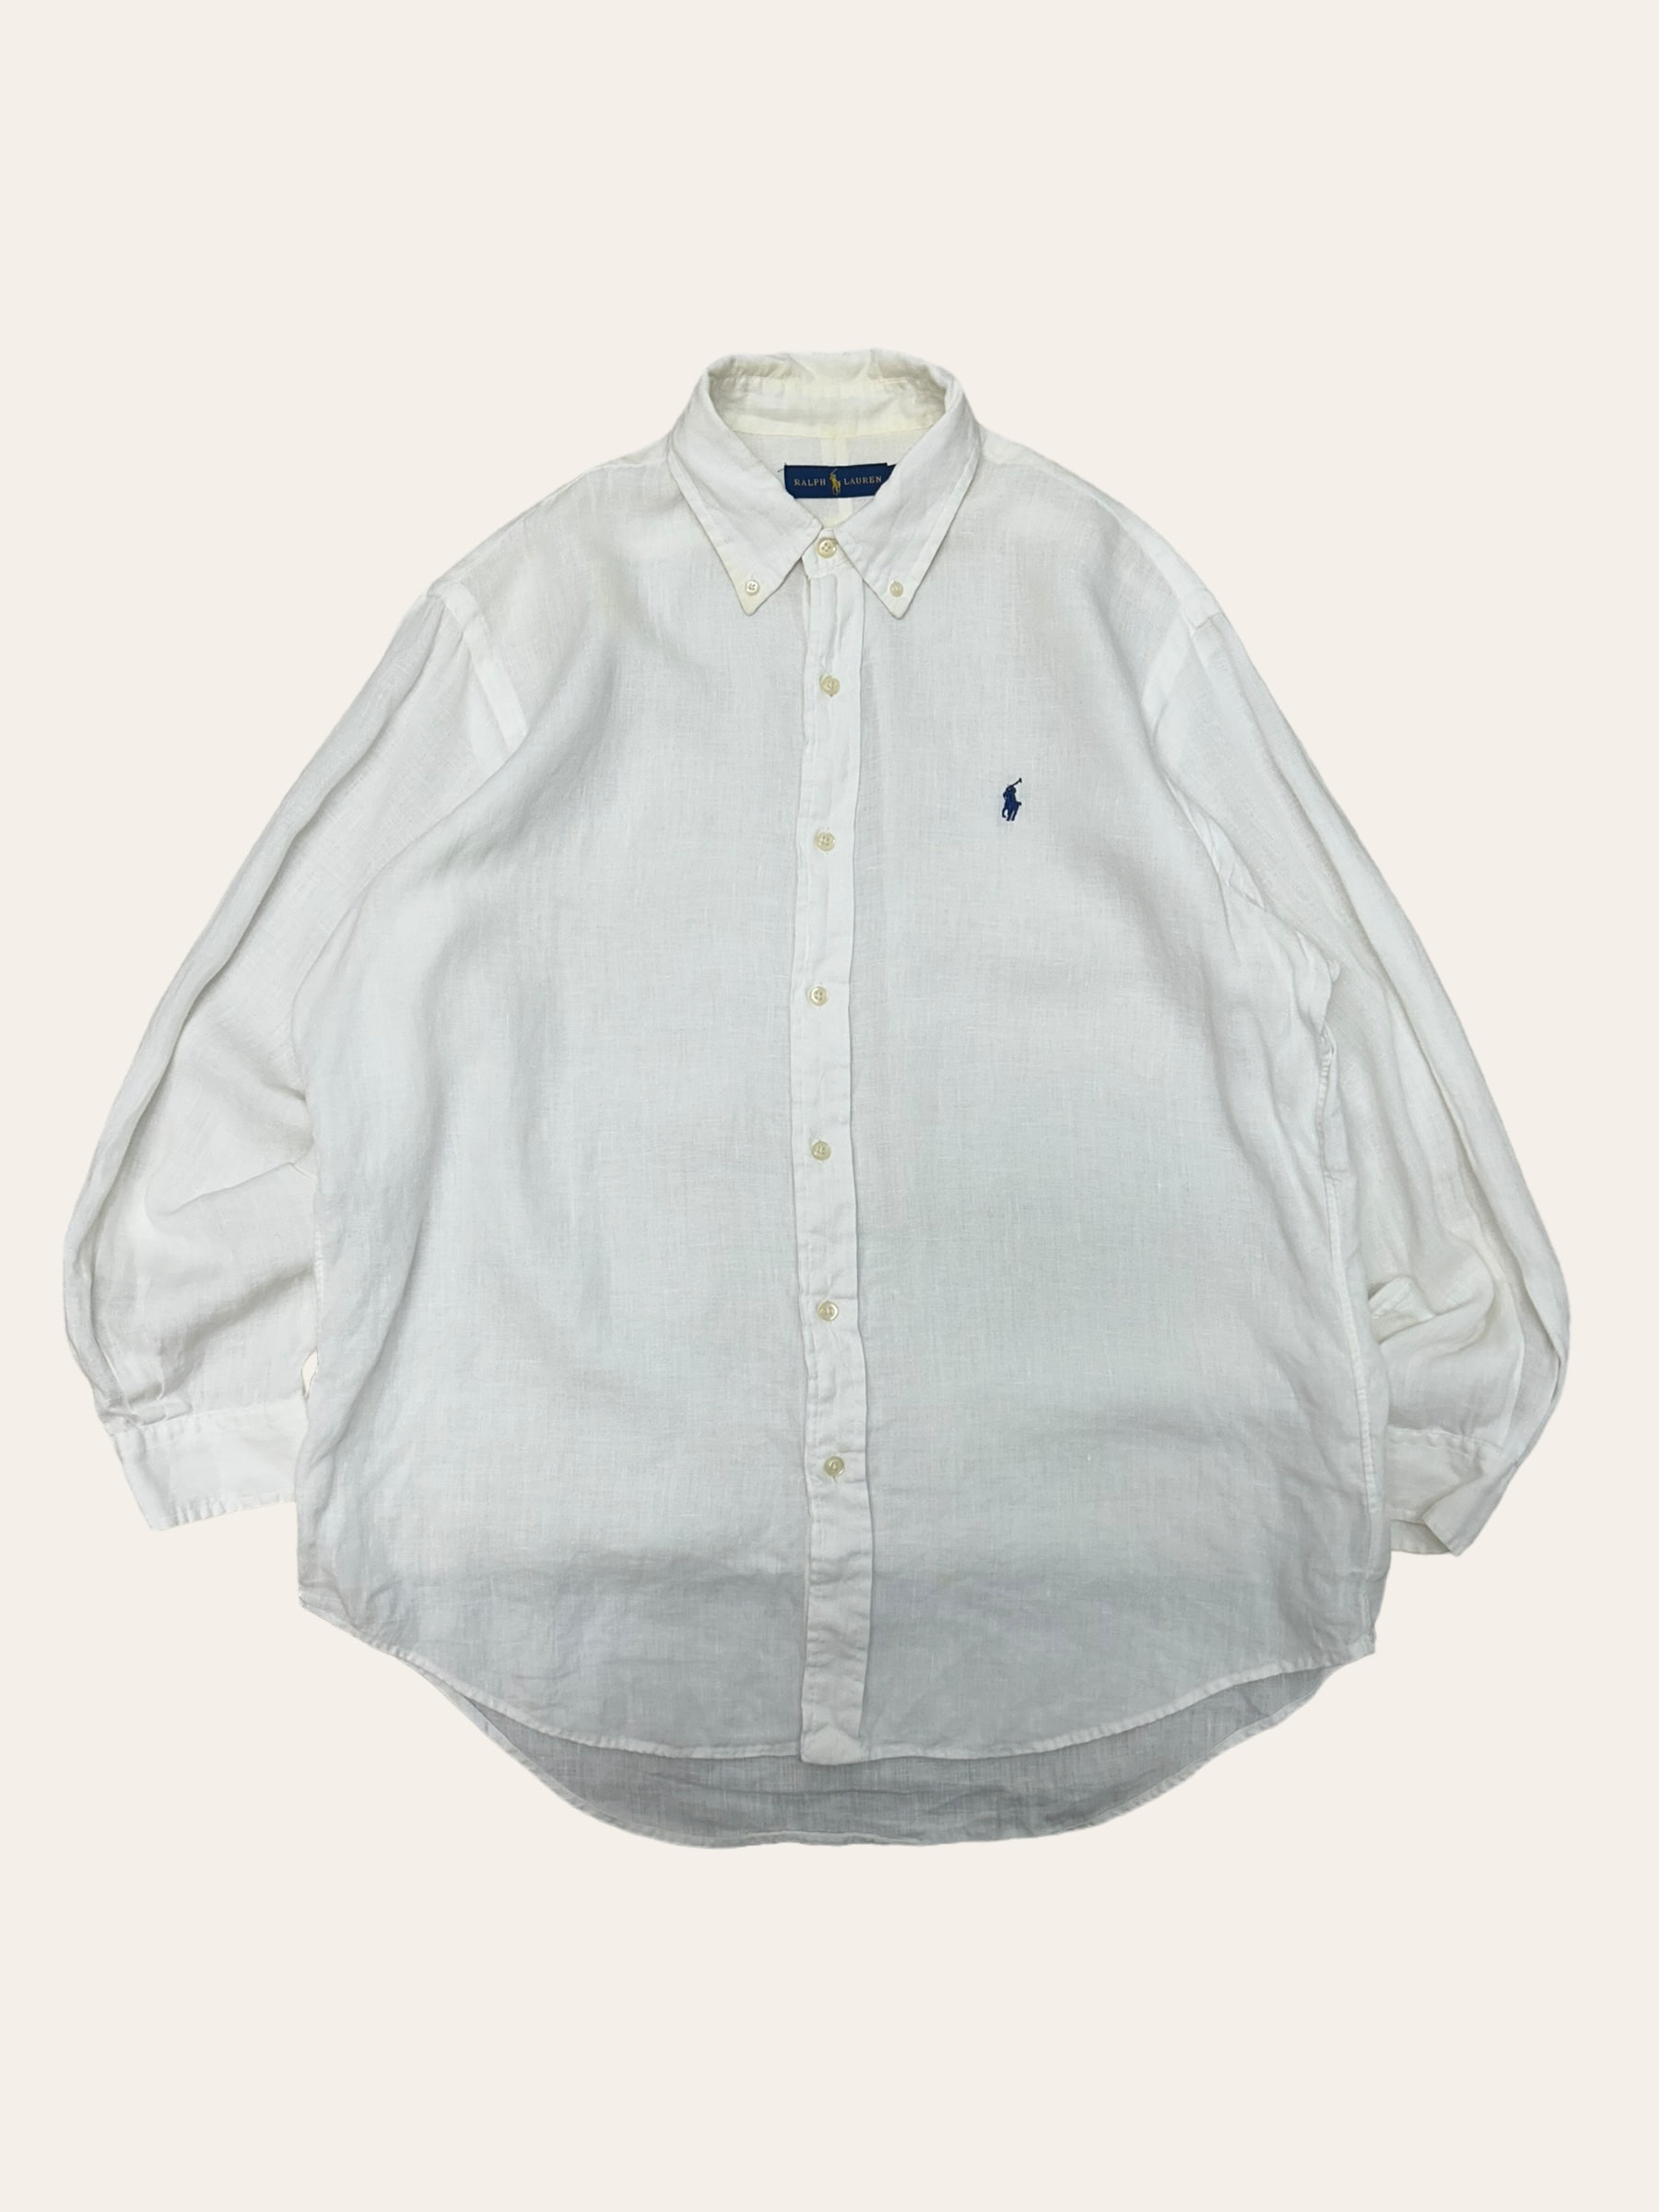 Polo ralph lauren white linen shirt L